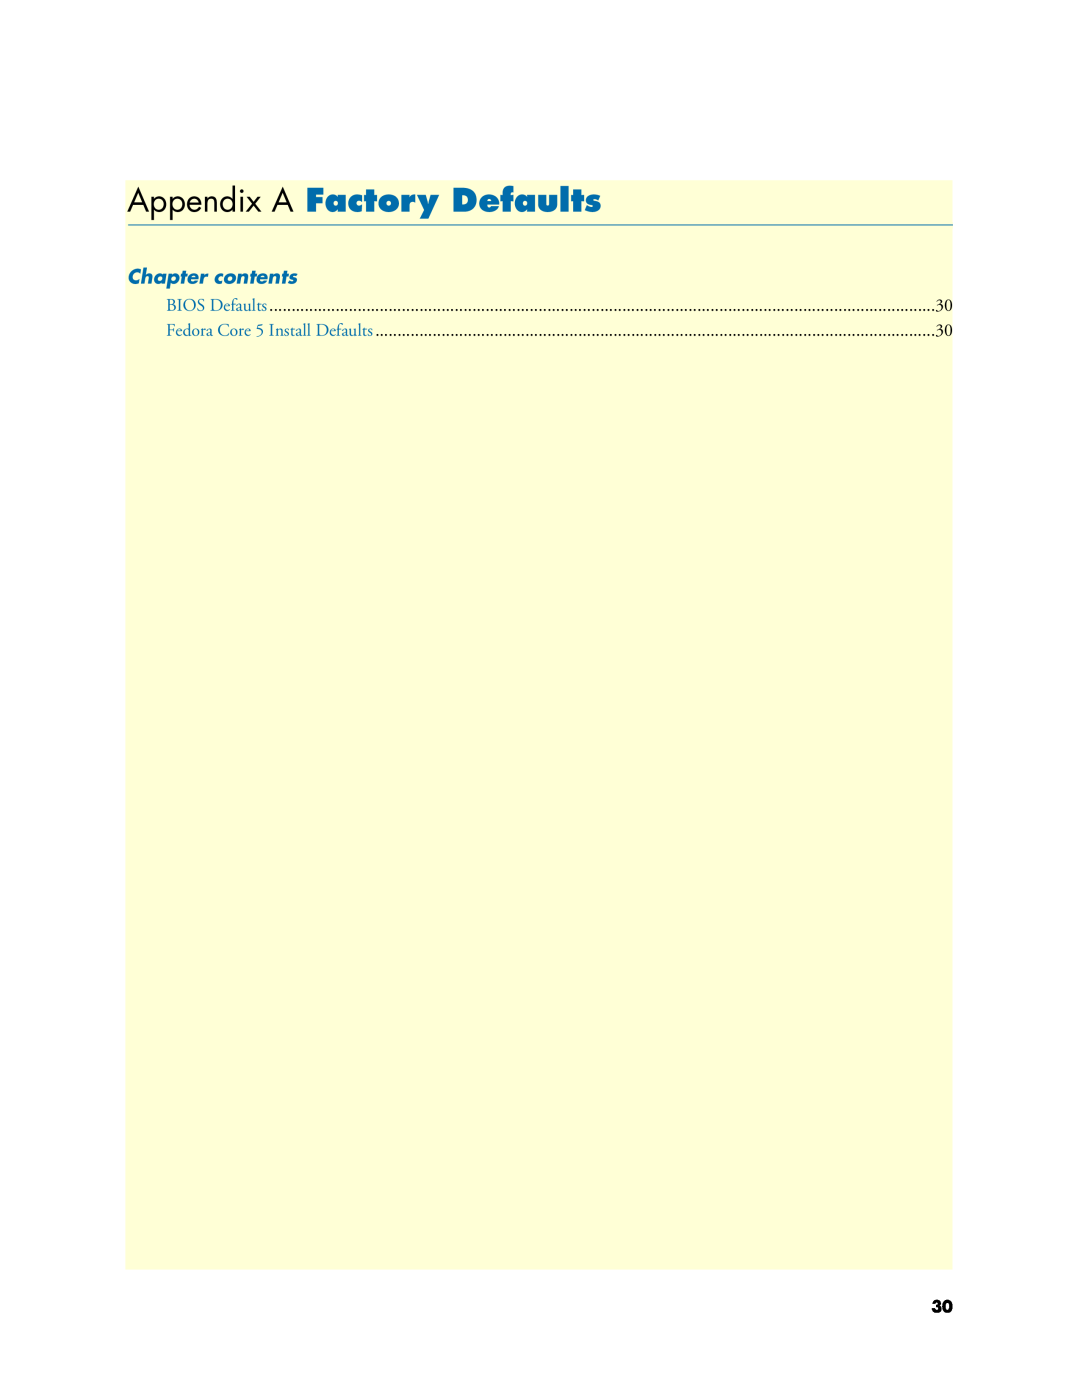 Patton electronic 07M6070-UM Appendix A Factory Defaults, Chapter contents, BIOS Defaults, Fedora Core 5 Install Defaults 